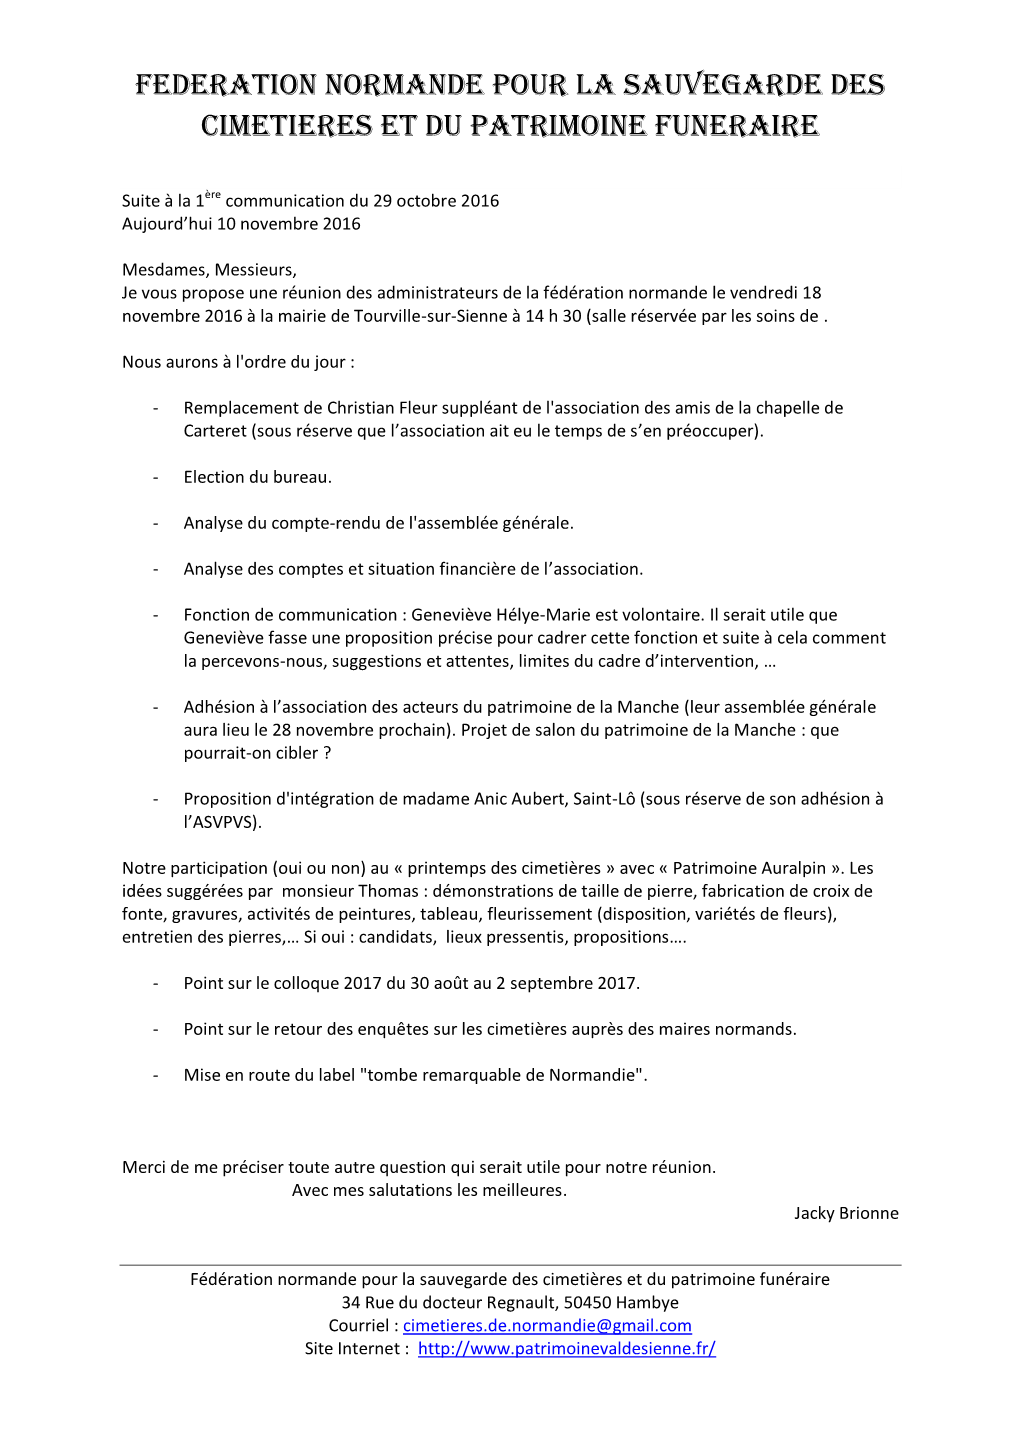 Federation Normande Pour La Sauvegarde Des Cimetieres Et Du Patrimoine Funeraire